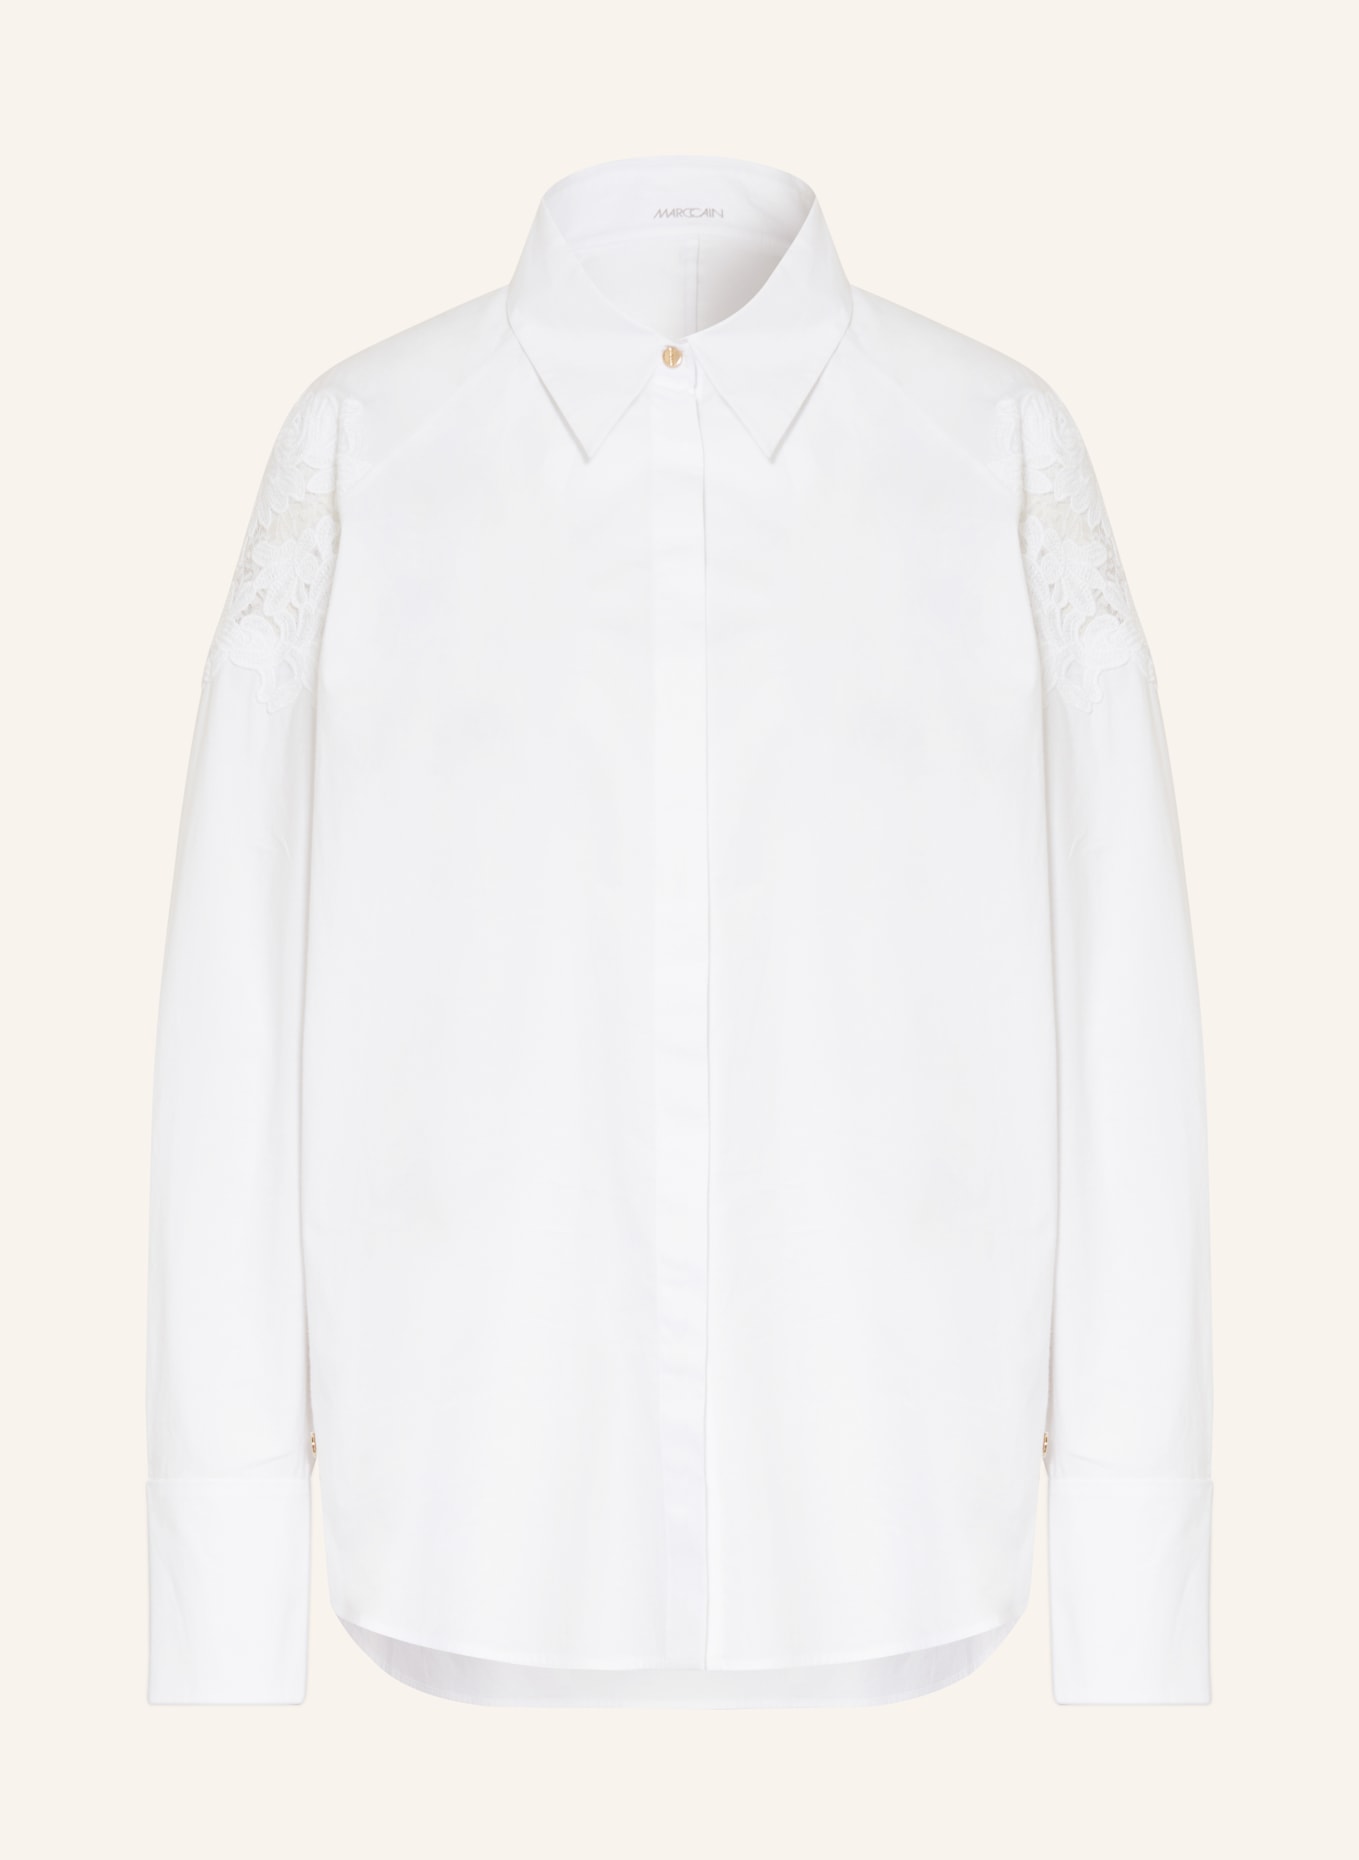 MARC CAIN Hemdbluse mit Spitze, Farbe: 100 WHITE (Bild 1)